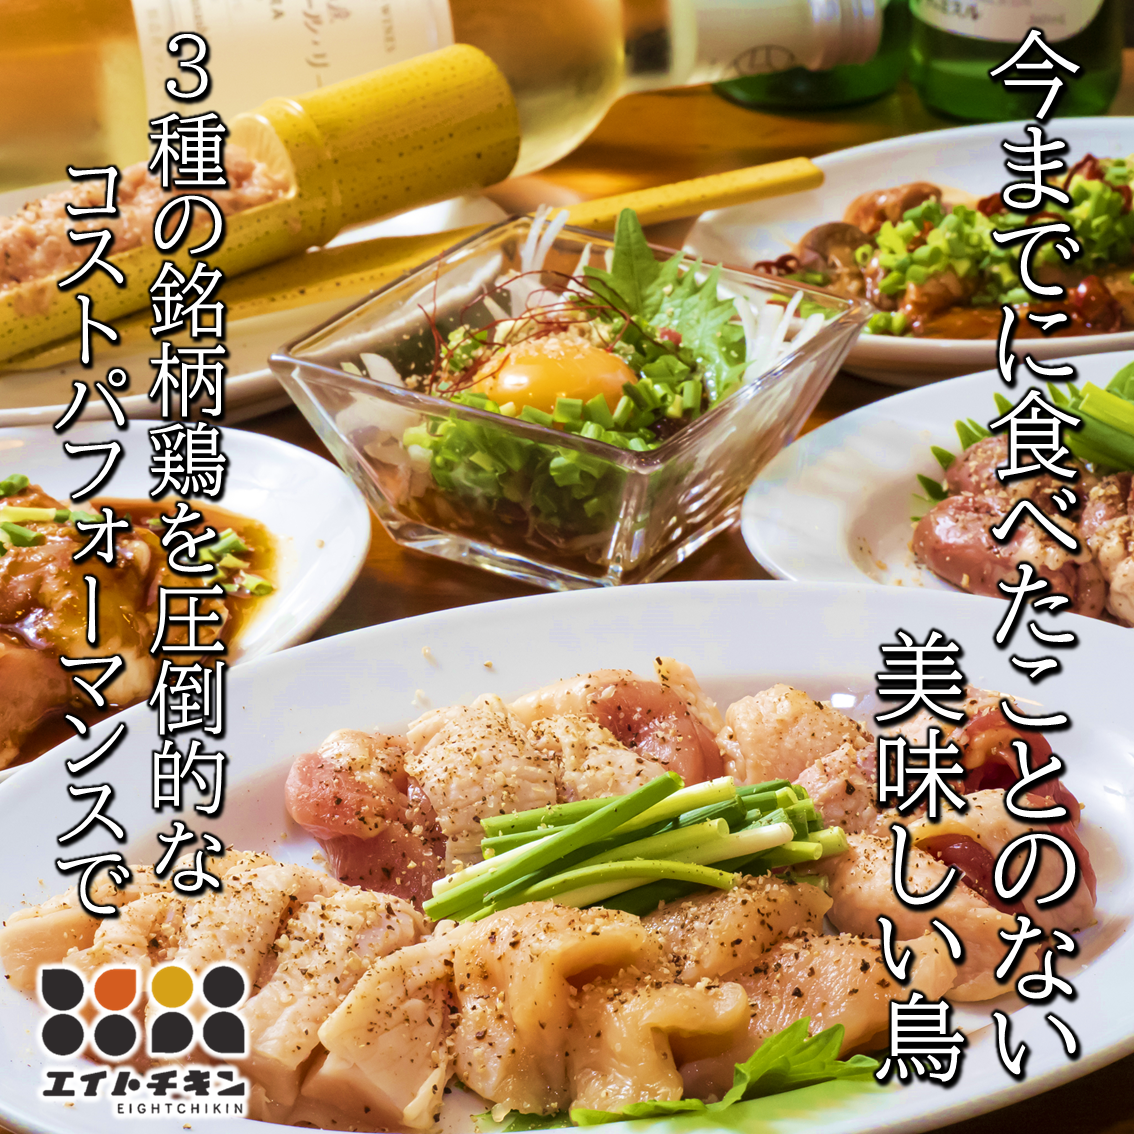 효고현의 맛있는을 전달 ~ 외식에 기쁨을 ~ 새 야키니쿠와 닭 요리를 풍부하게 준비 ♪